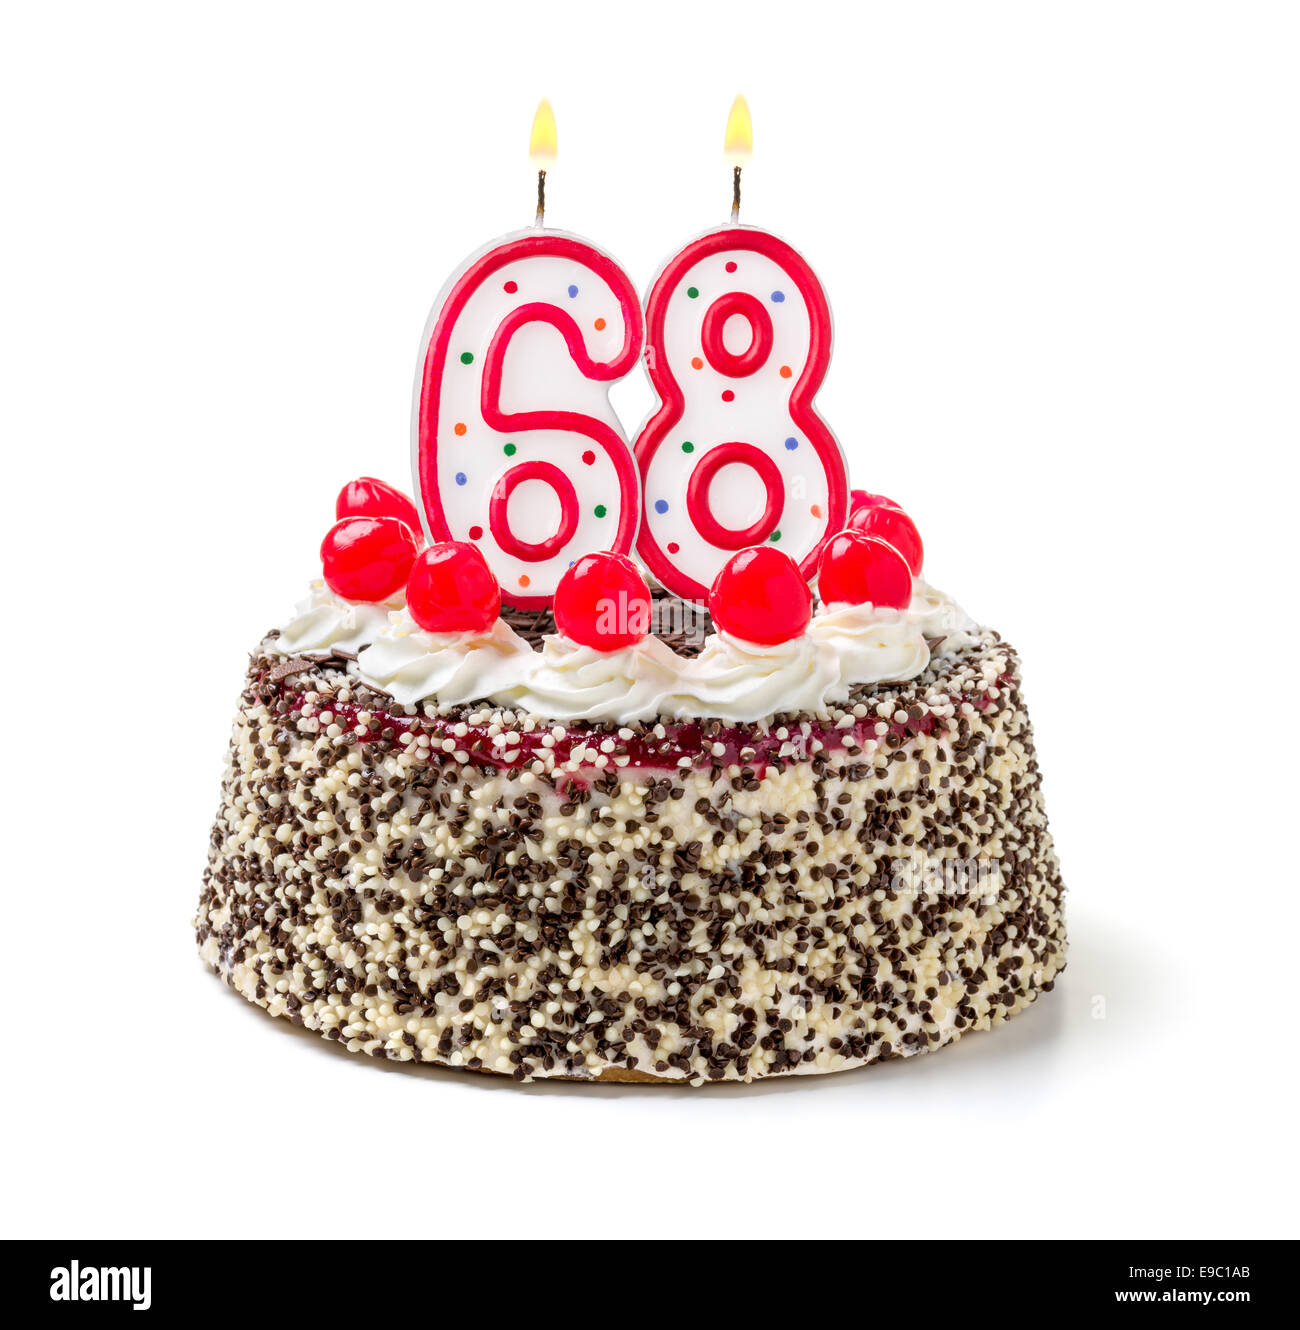 999+ Velas de cumpleaños Fotos  Descargar imágenes gratis en Unsplash